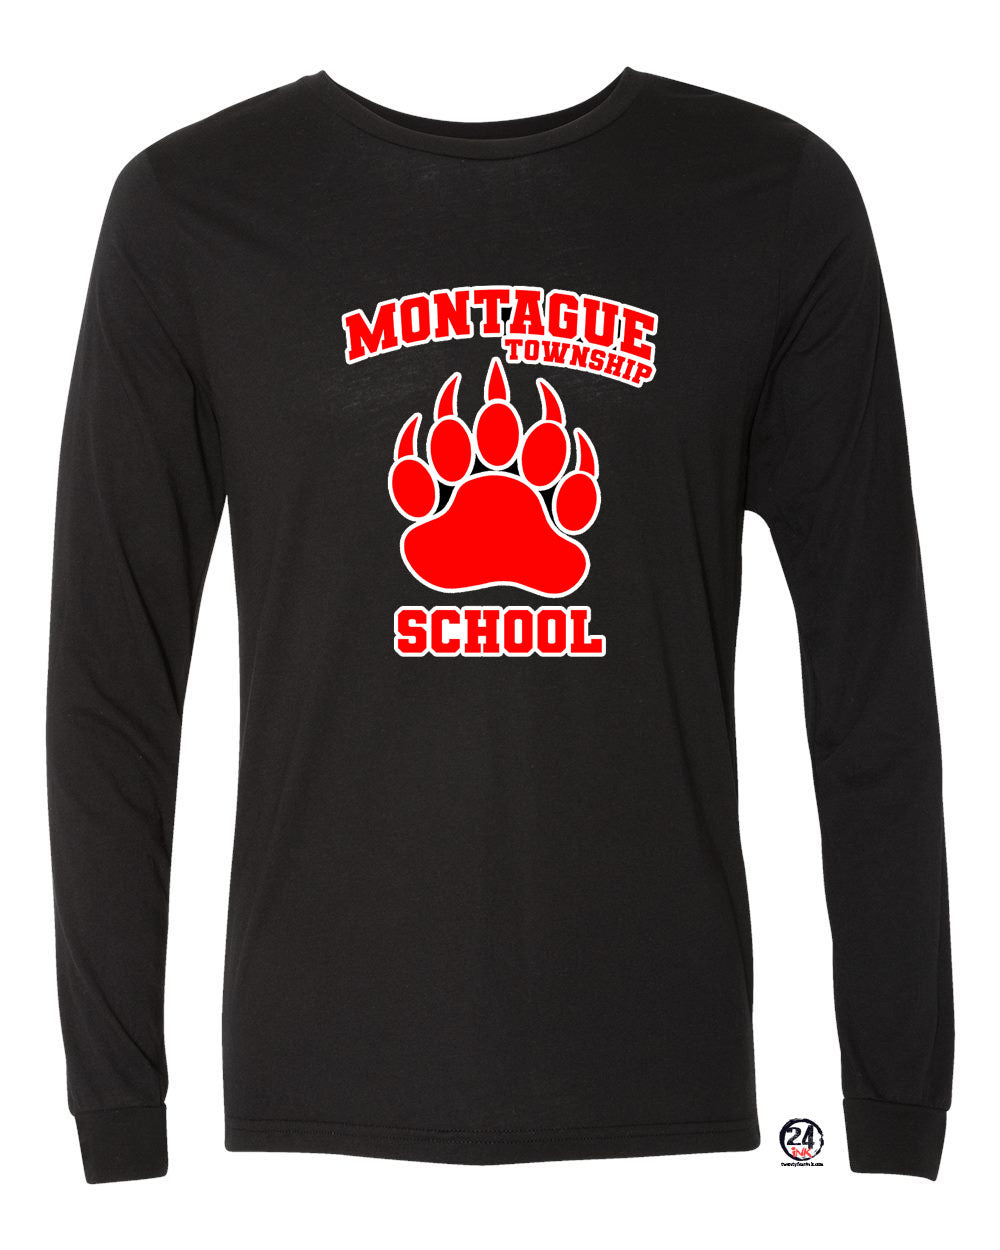 Montague Design 2 Long Sleeve Shirt